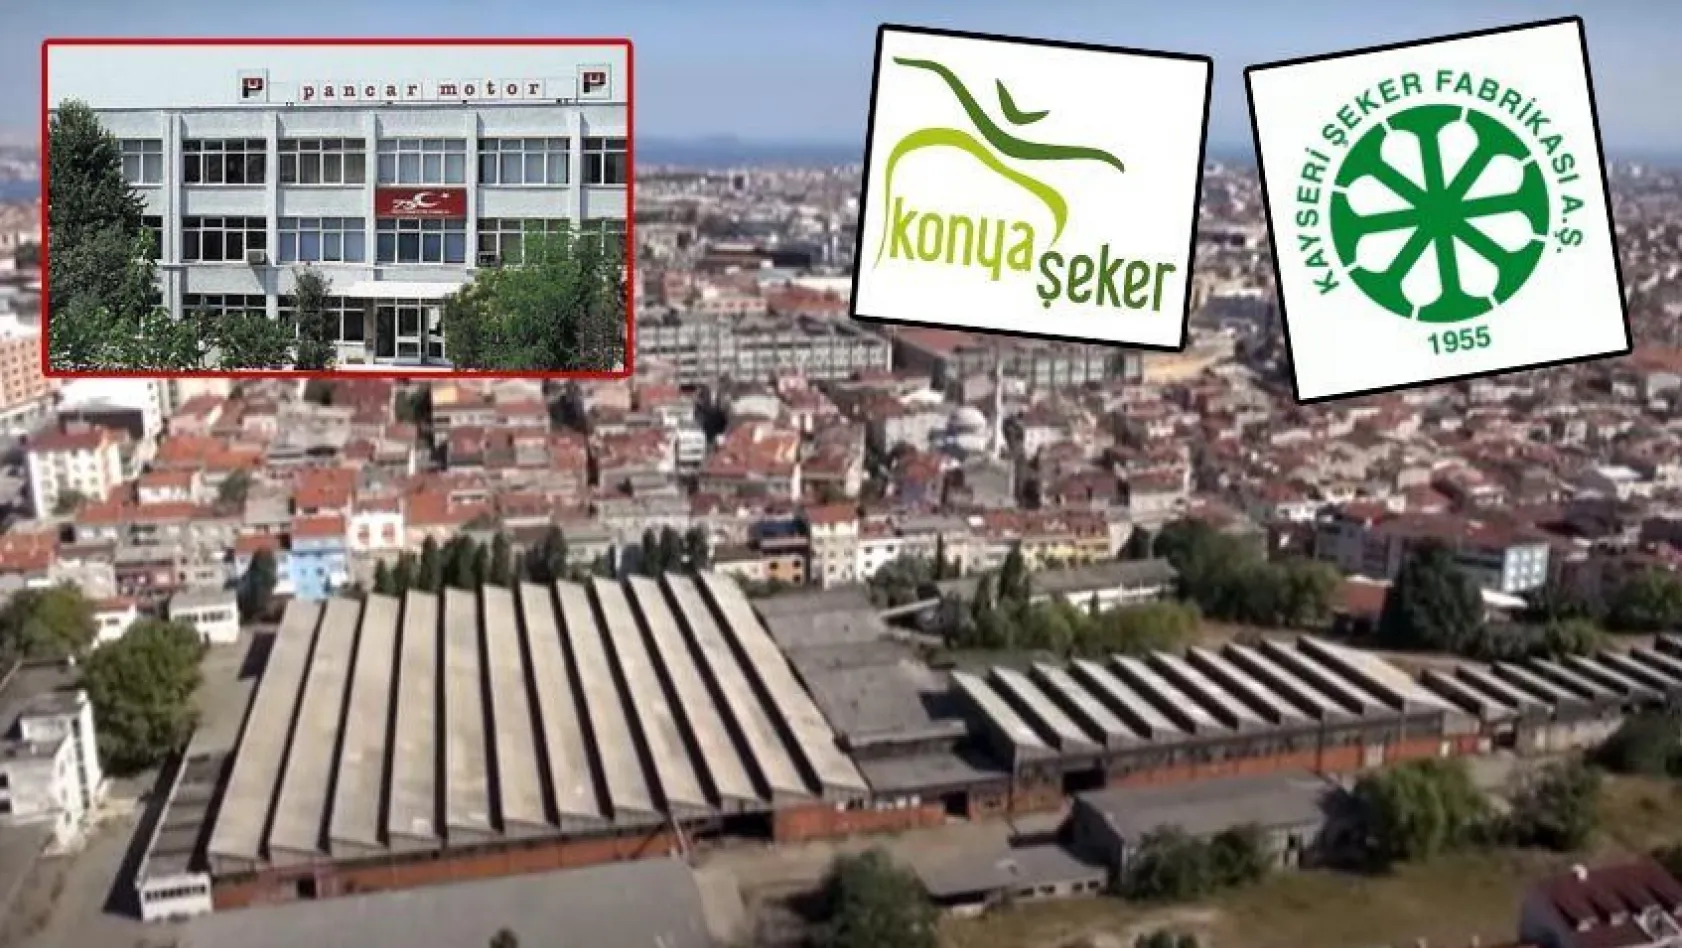 Kayseri ve Konya Şeker, Pancar Motor arazisini 252 milyon TL'ye devretti